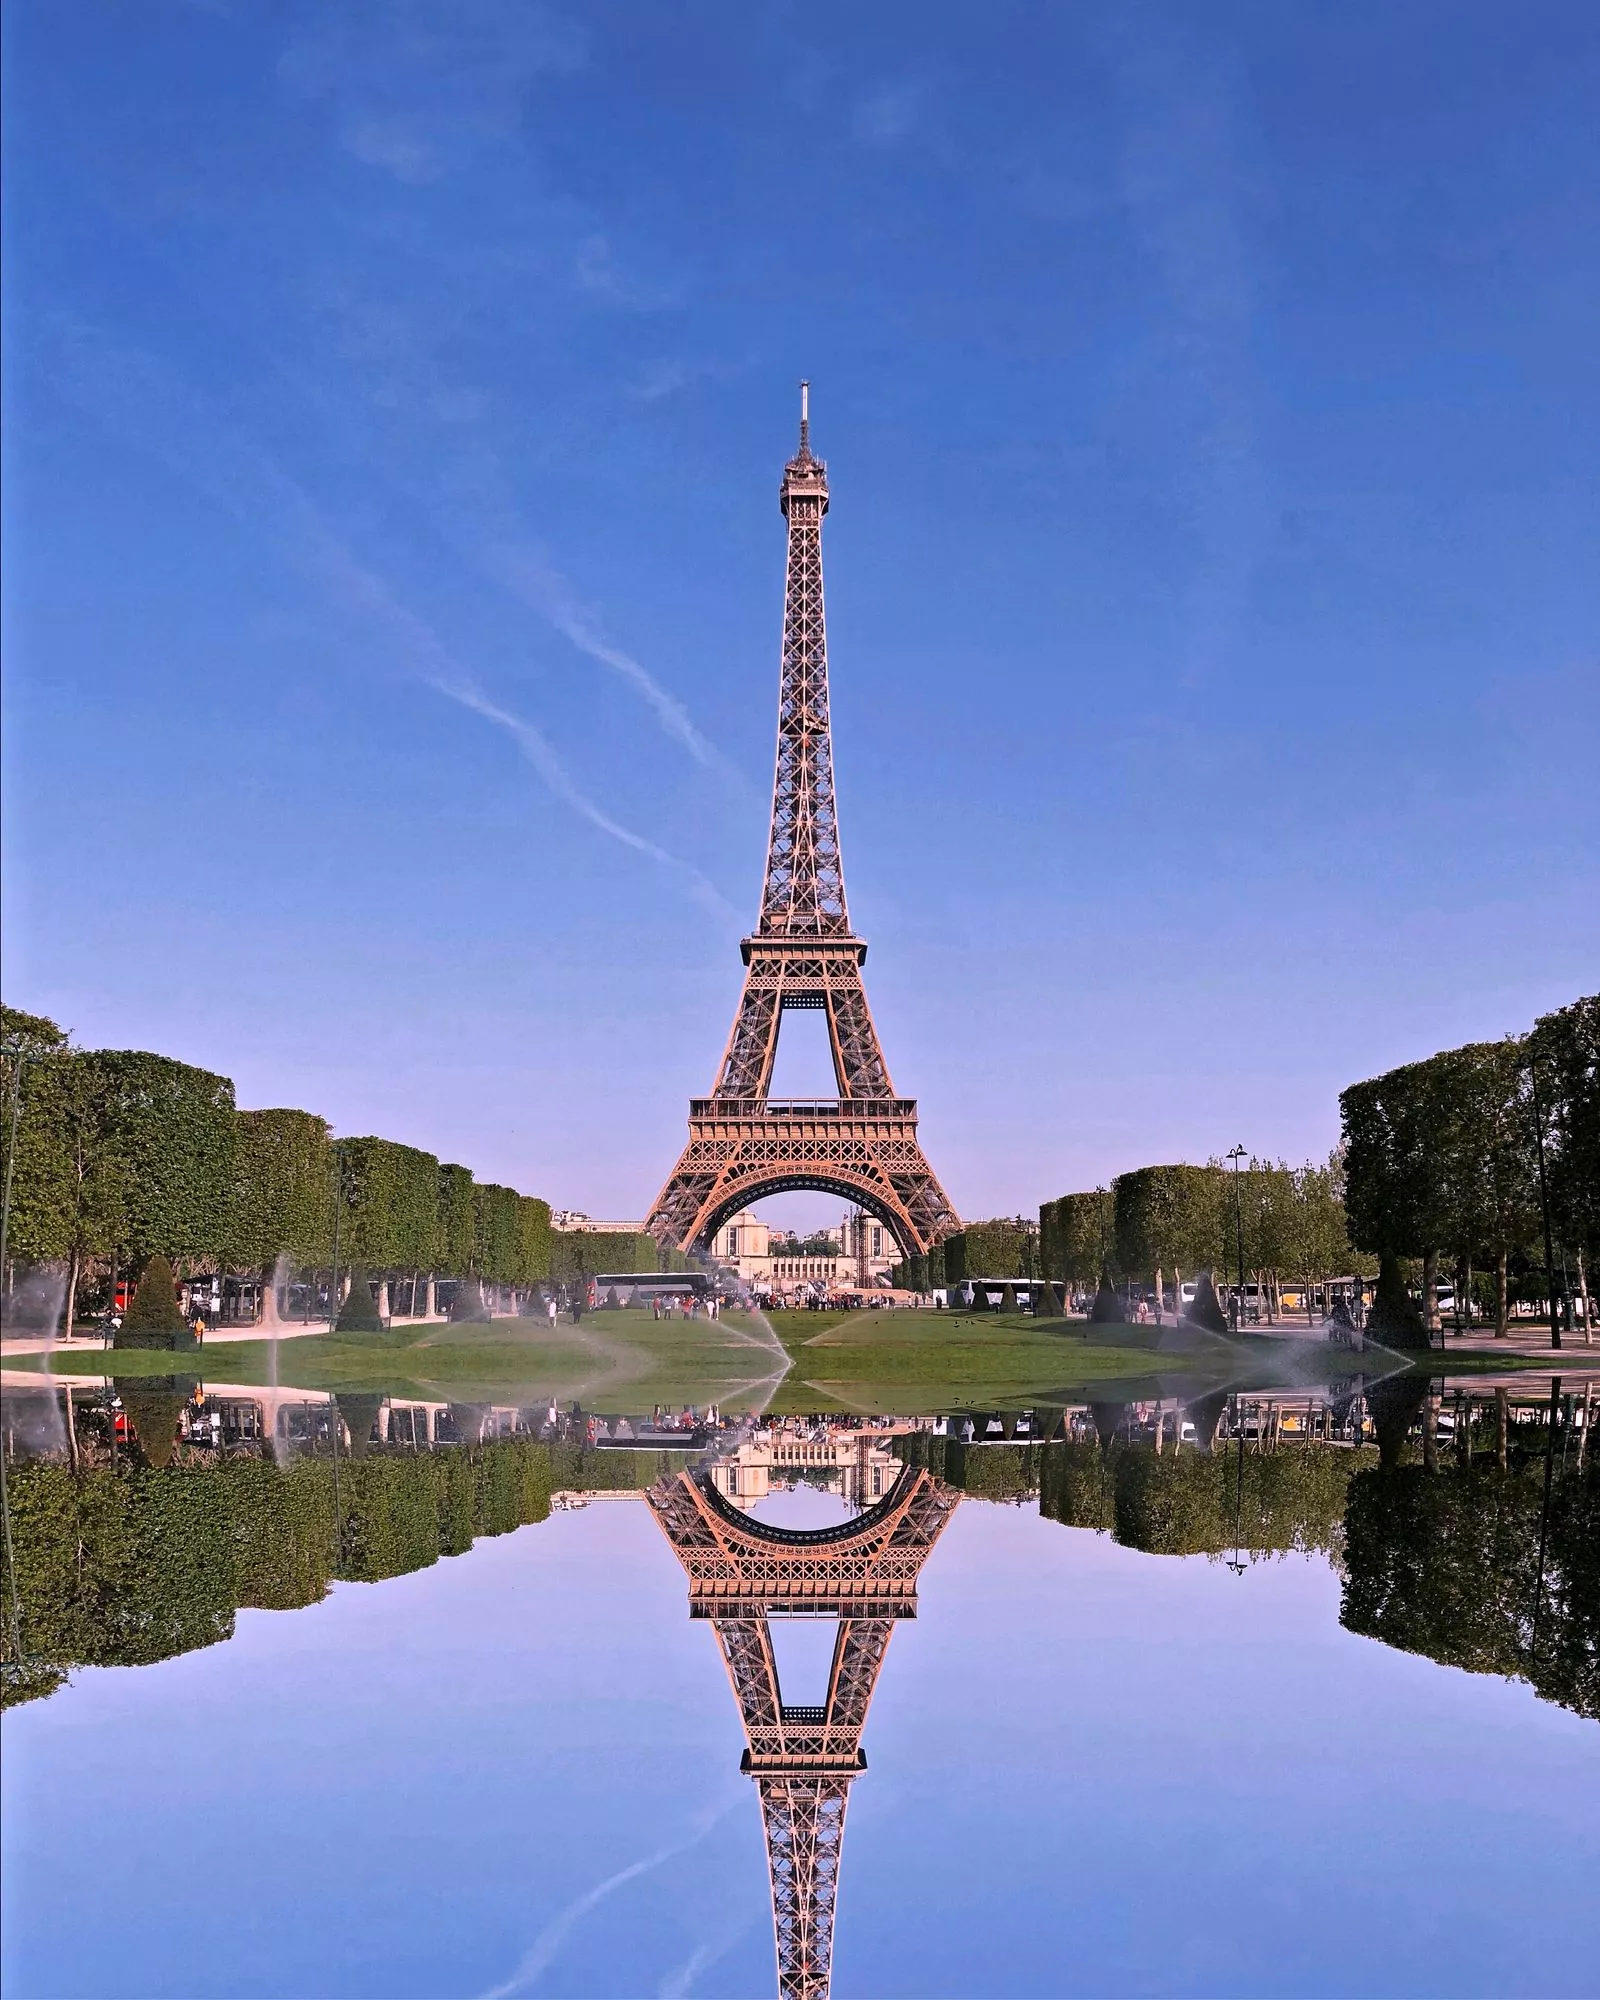 Ikoninen Eiffel-torni on Niina Laitiselle tuttu vain leffoista ja kirjoista.